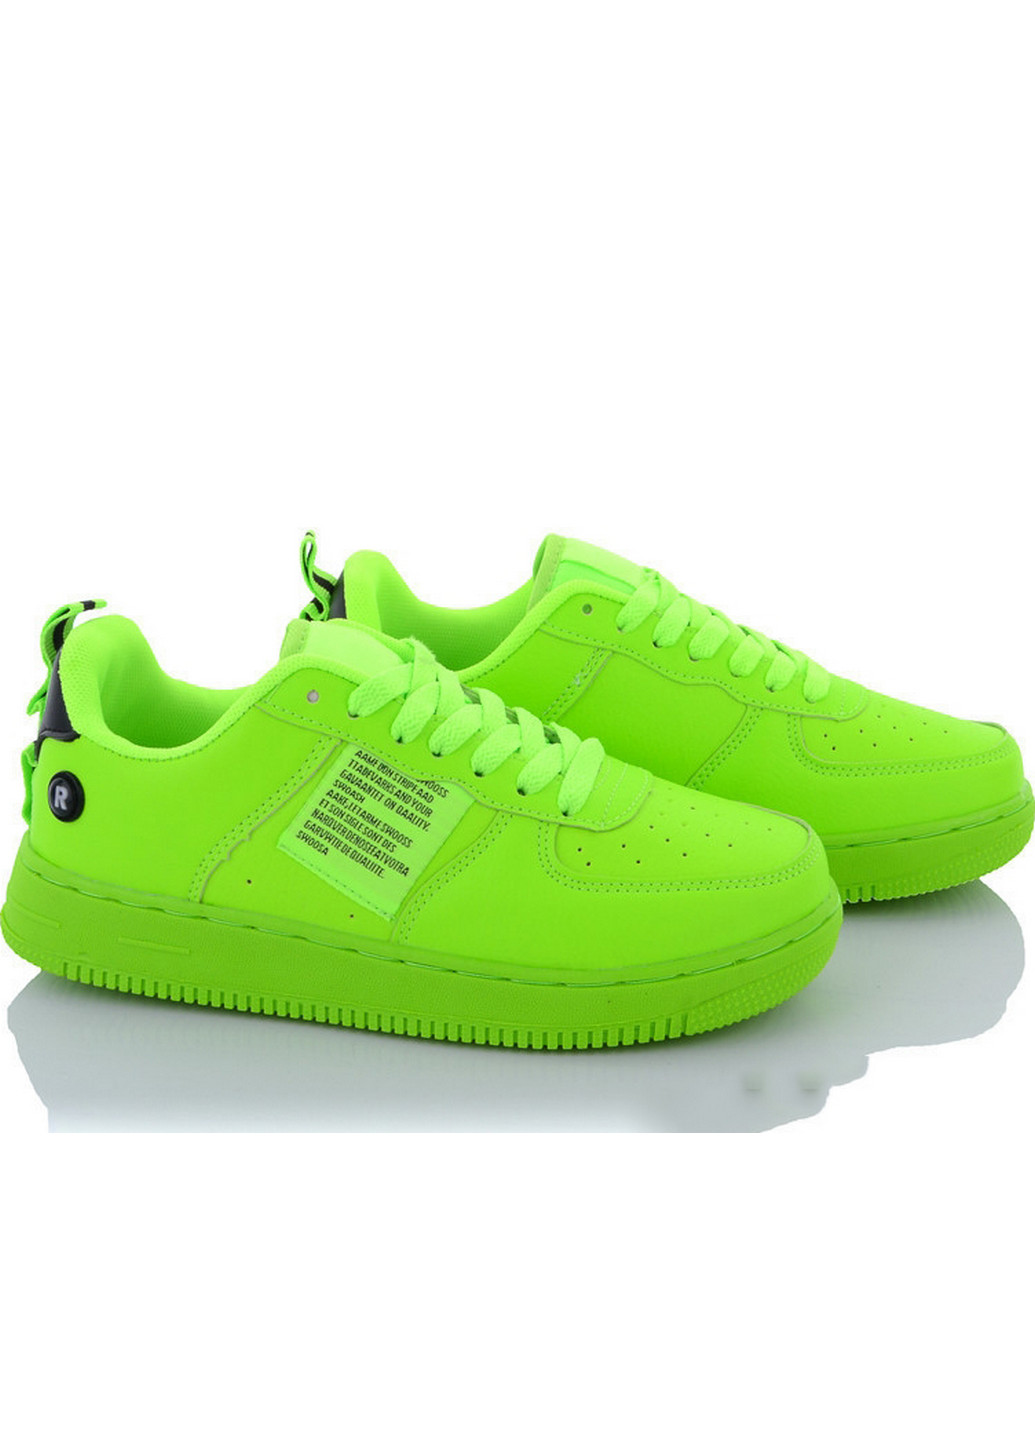 Зеленые всесезонные кроссовки b21201-7 41 зеленый Navigator